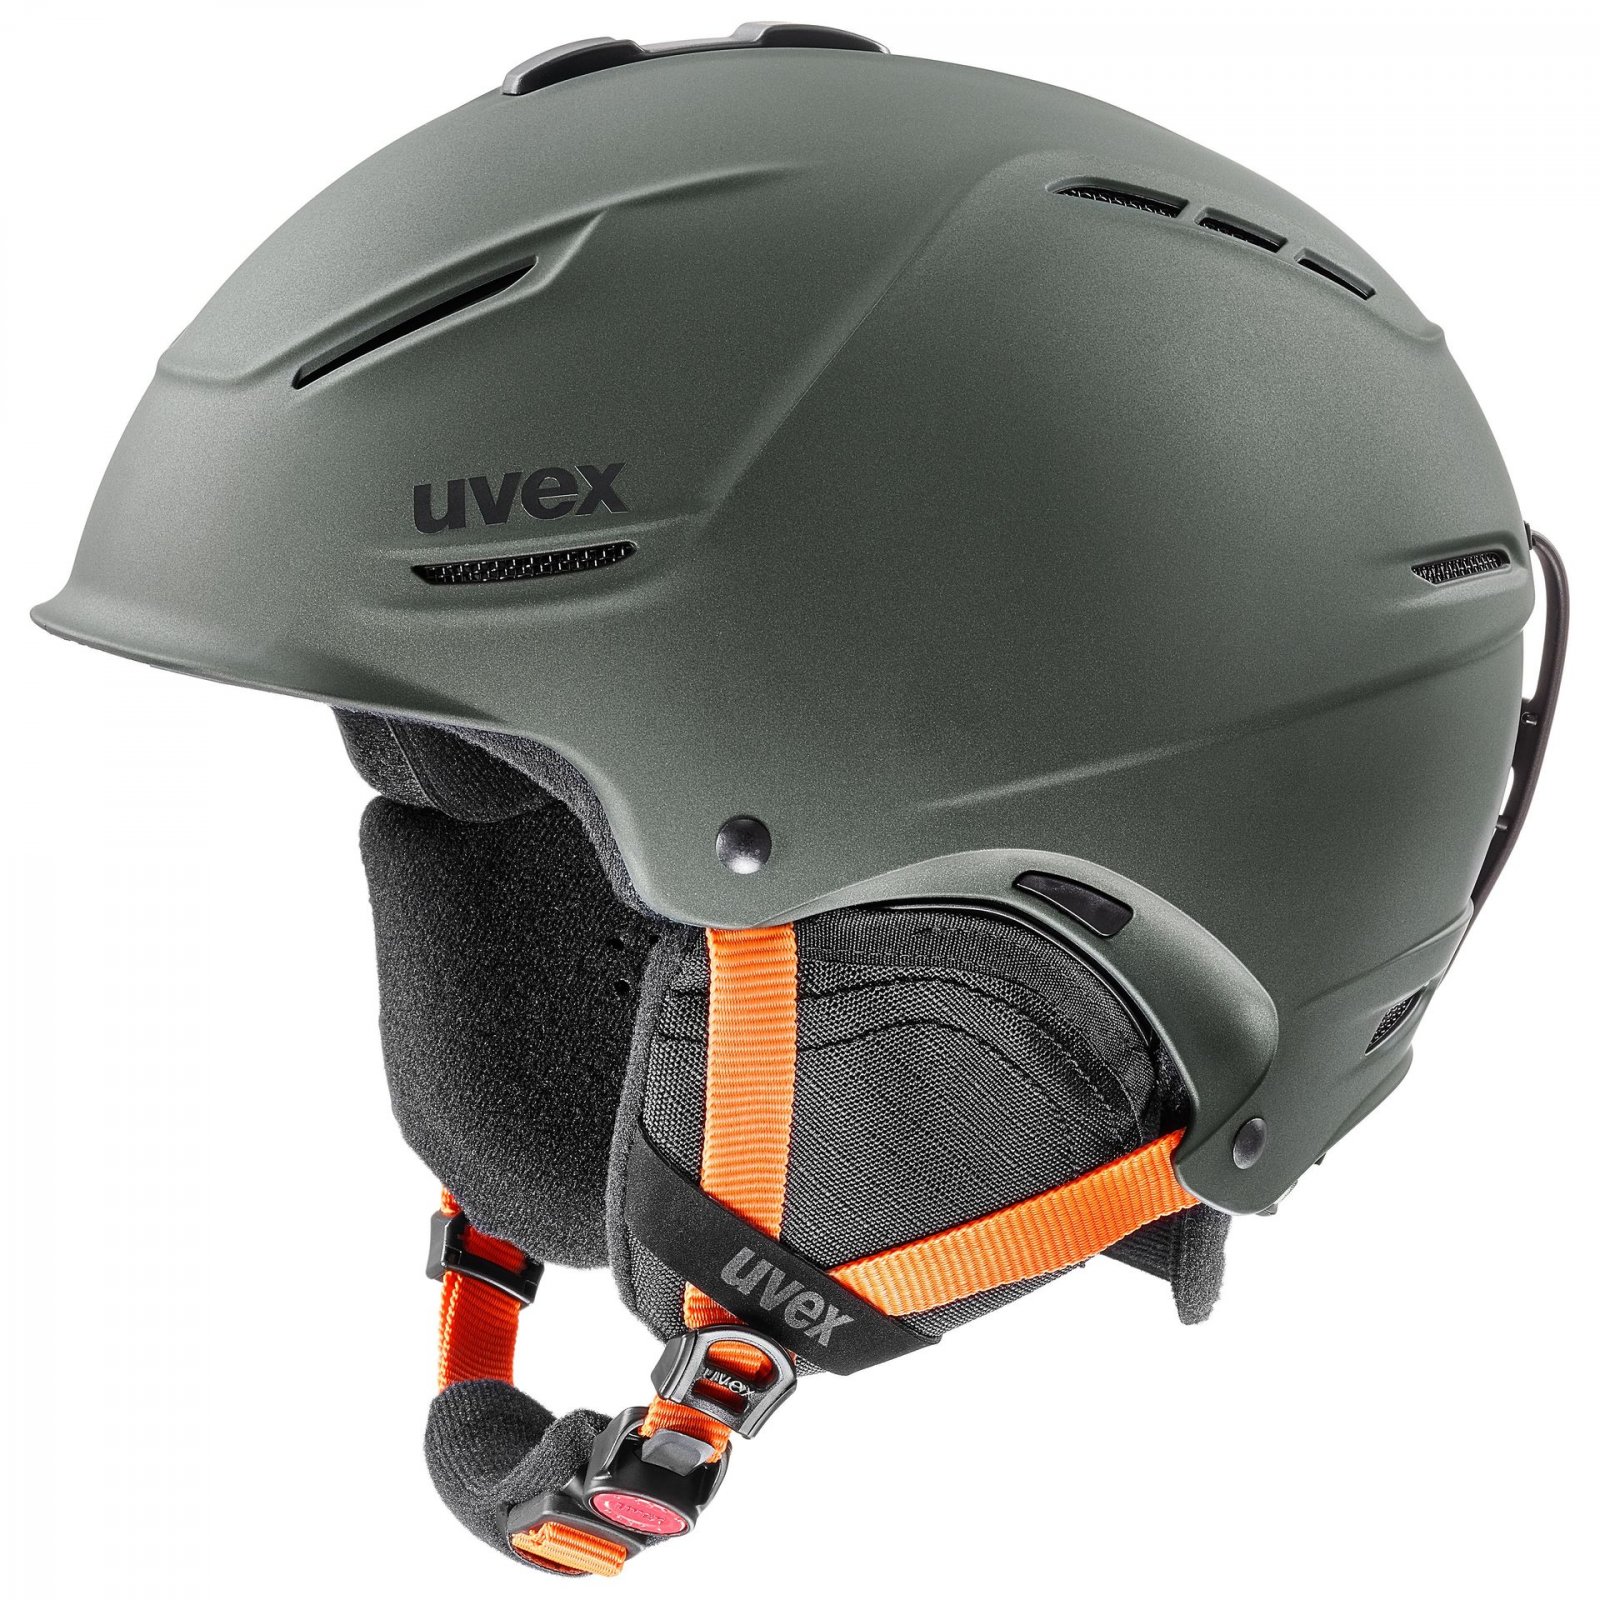 Ski helmet UVEX plus 2.0 19/20 | Sportheaters.com